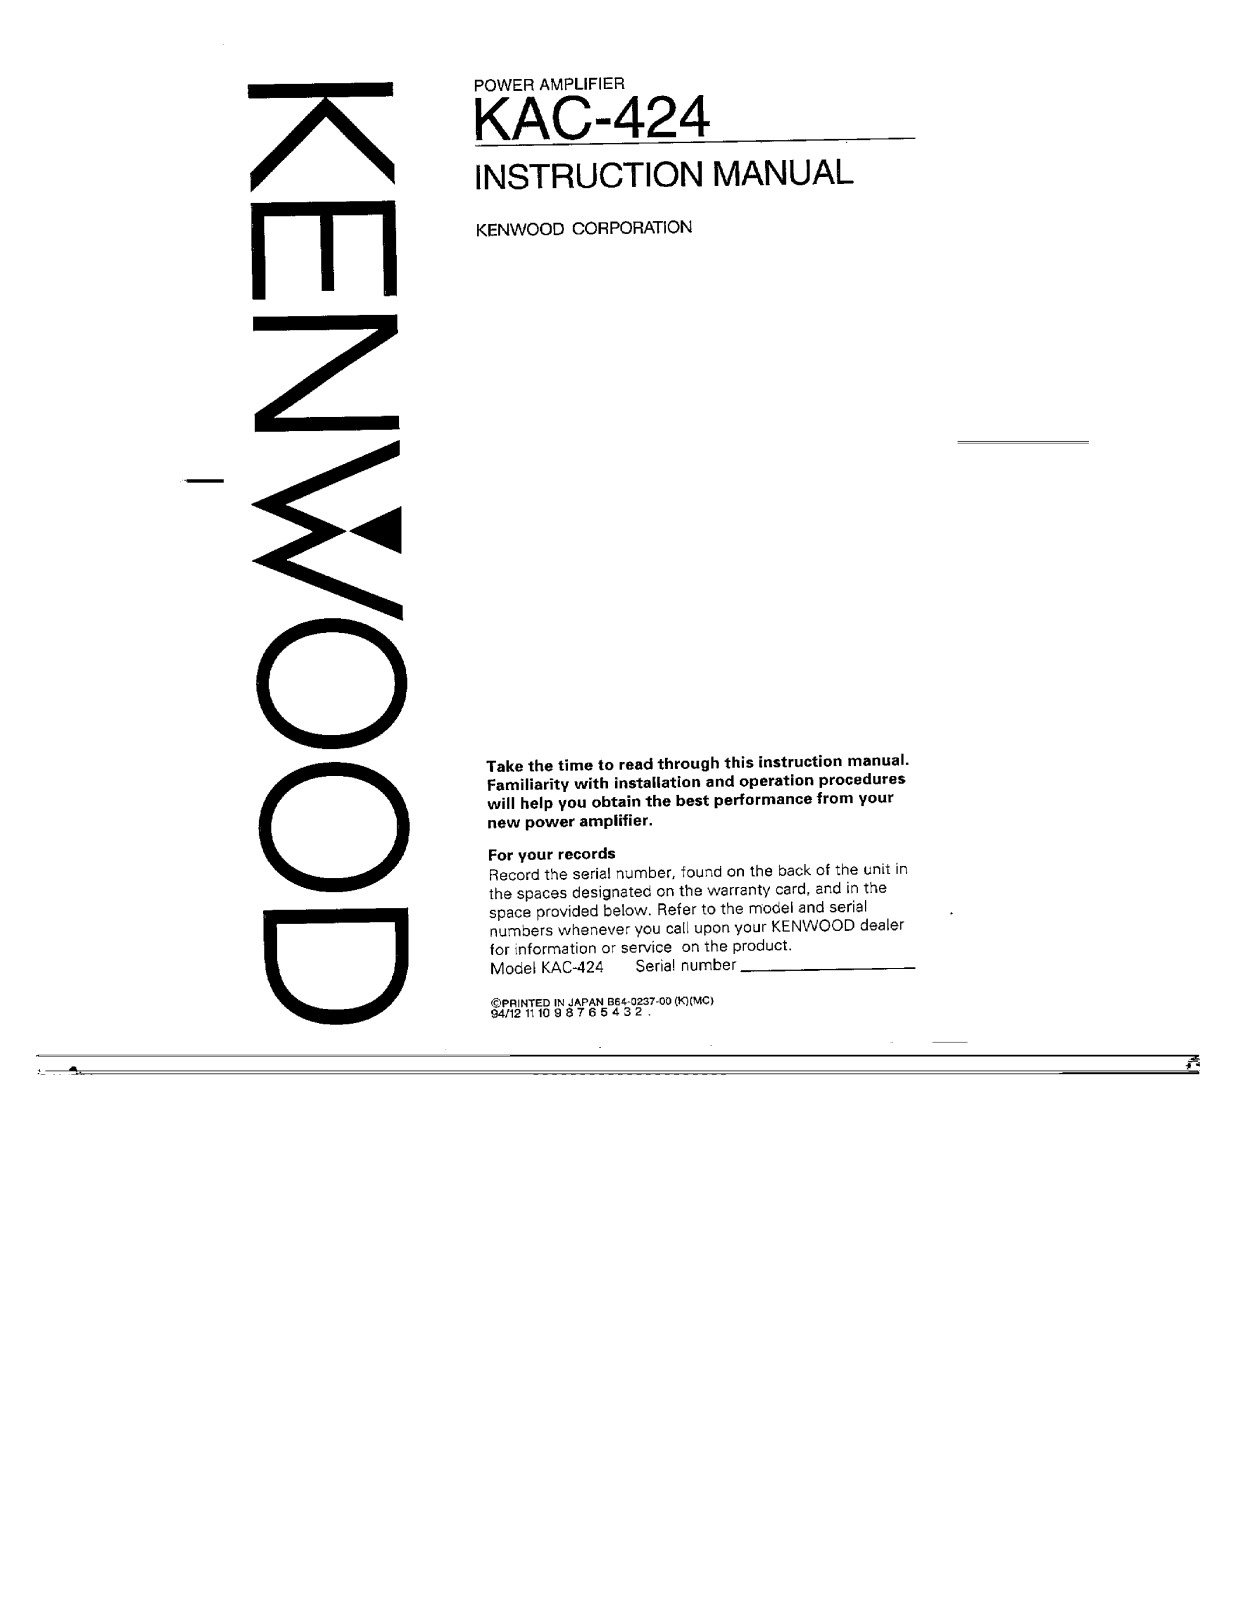 Kenwood KAC-424 Owner's Manual